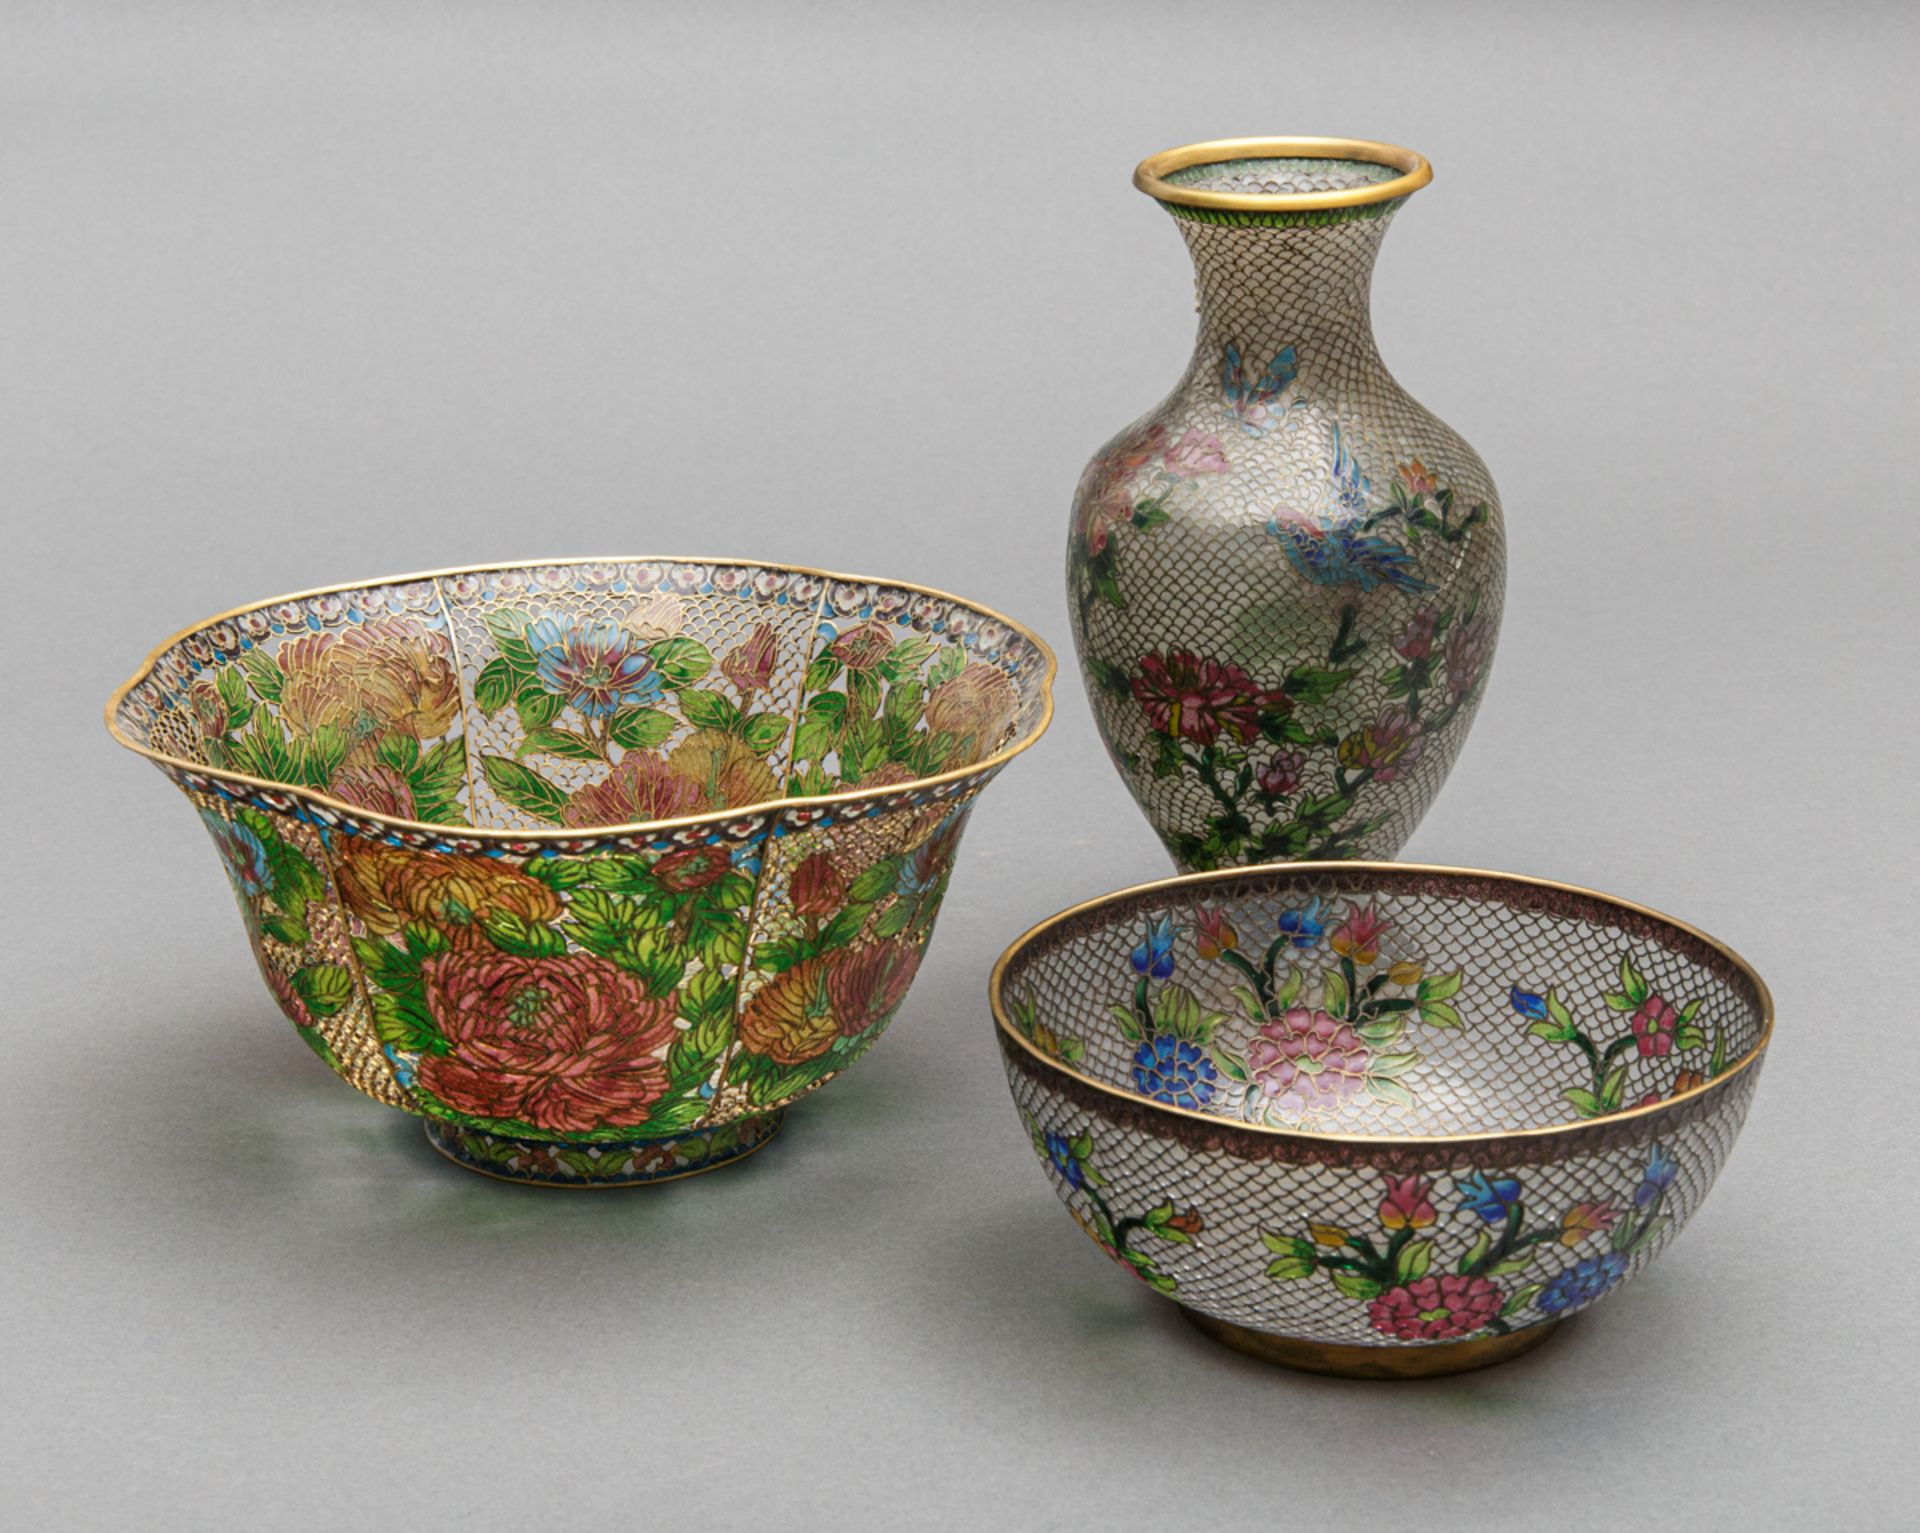 Feine Cloisonné-Garnitur, 2 Schalen und 1 Vase in 'Plique-à-jour', China, 2. H. 20. Jh. - Bild 2 aus 3